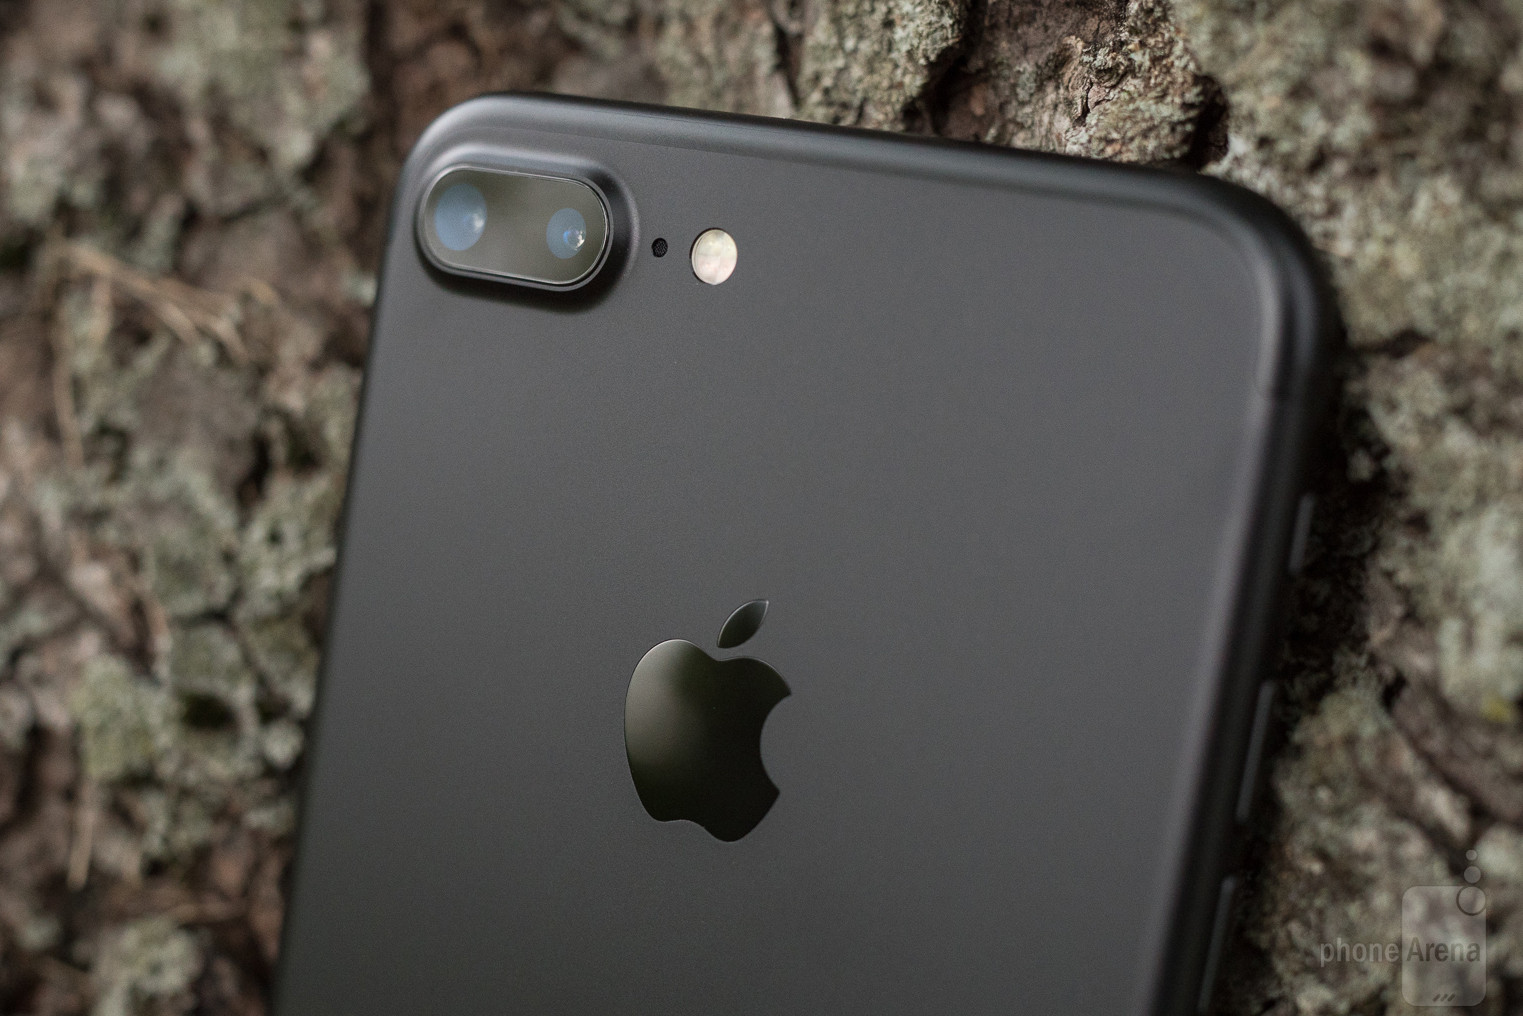 iPhone thế hệ kế tiếp sẽ được trang bị camera độ phân giải cao hơn, có thể 16MP hoặc 18MP